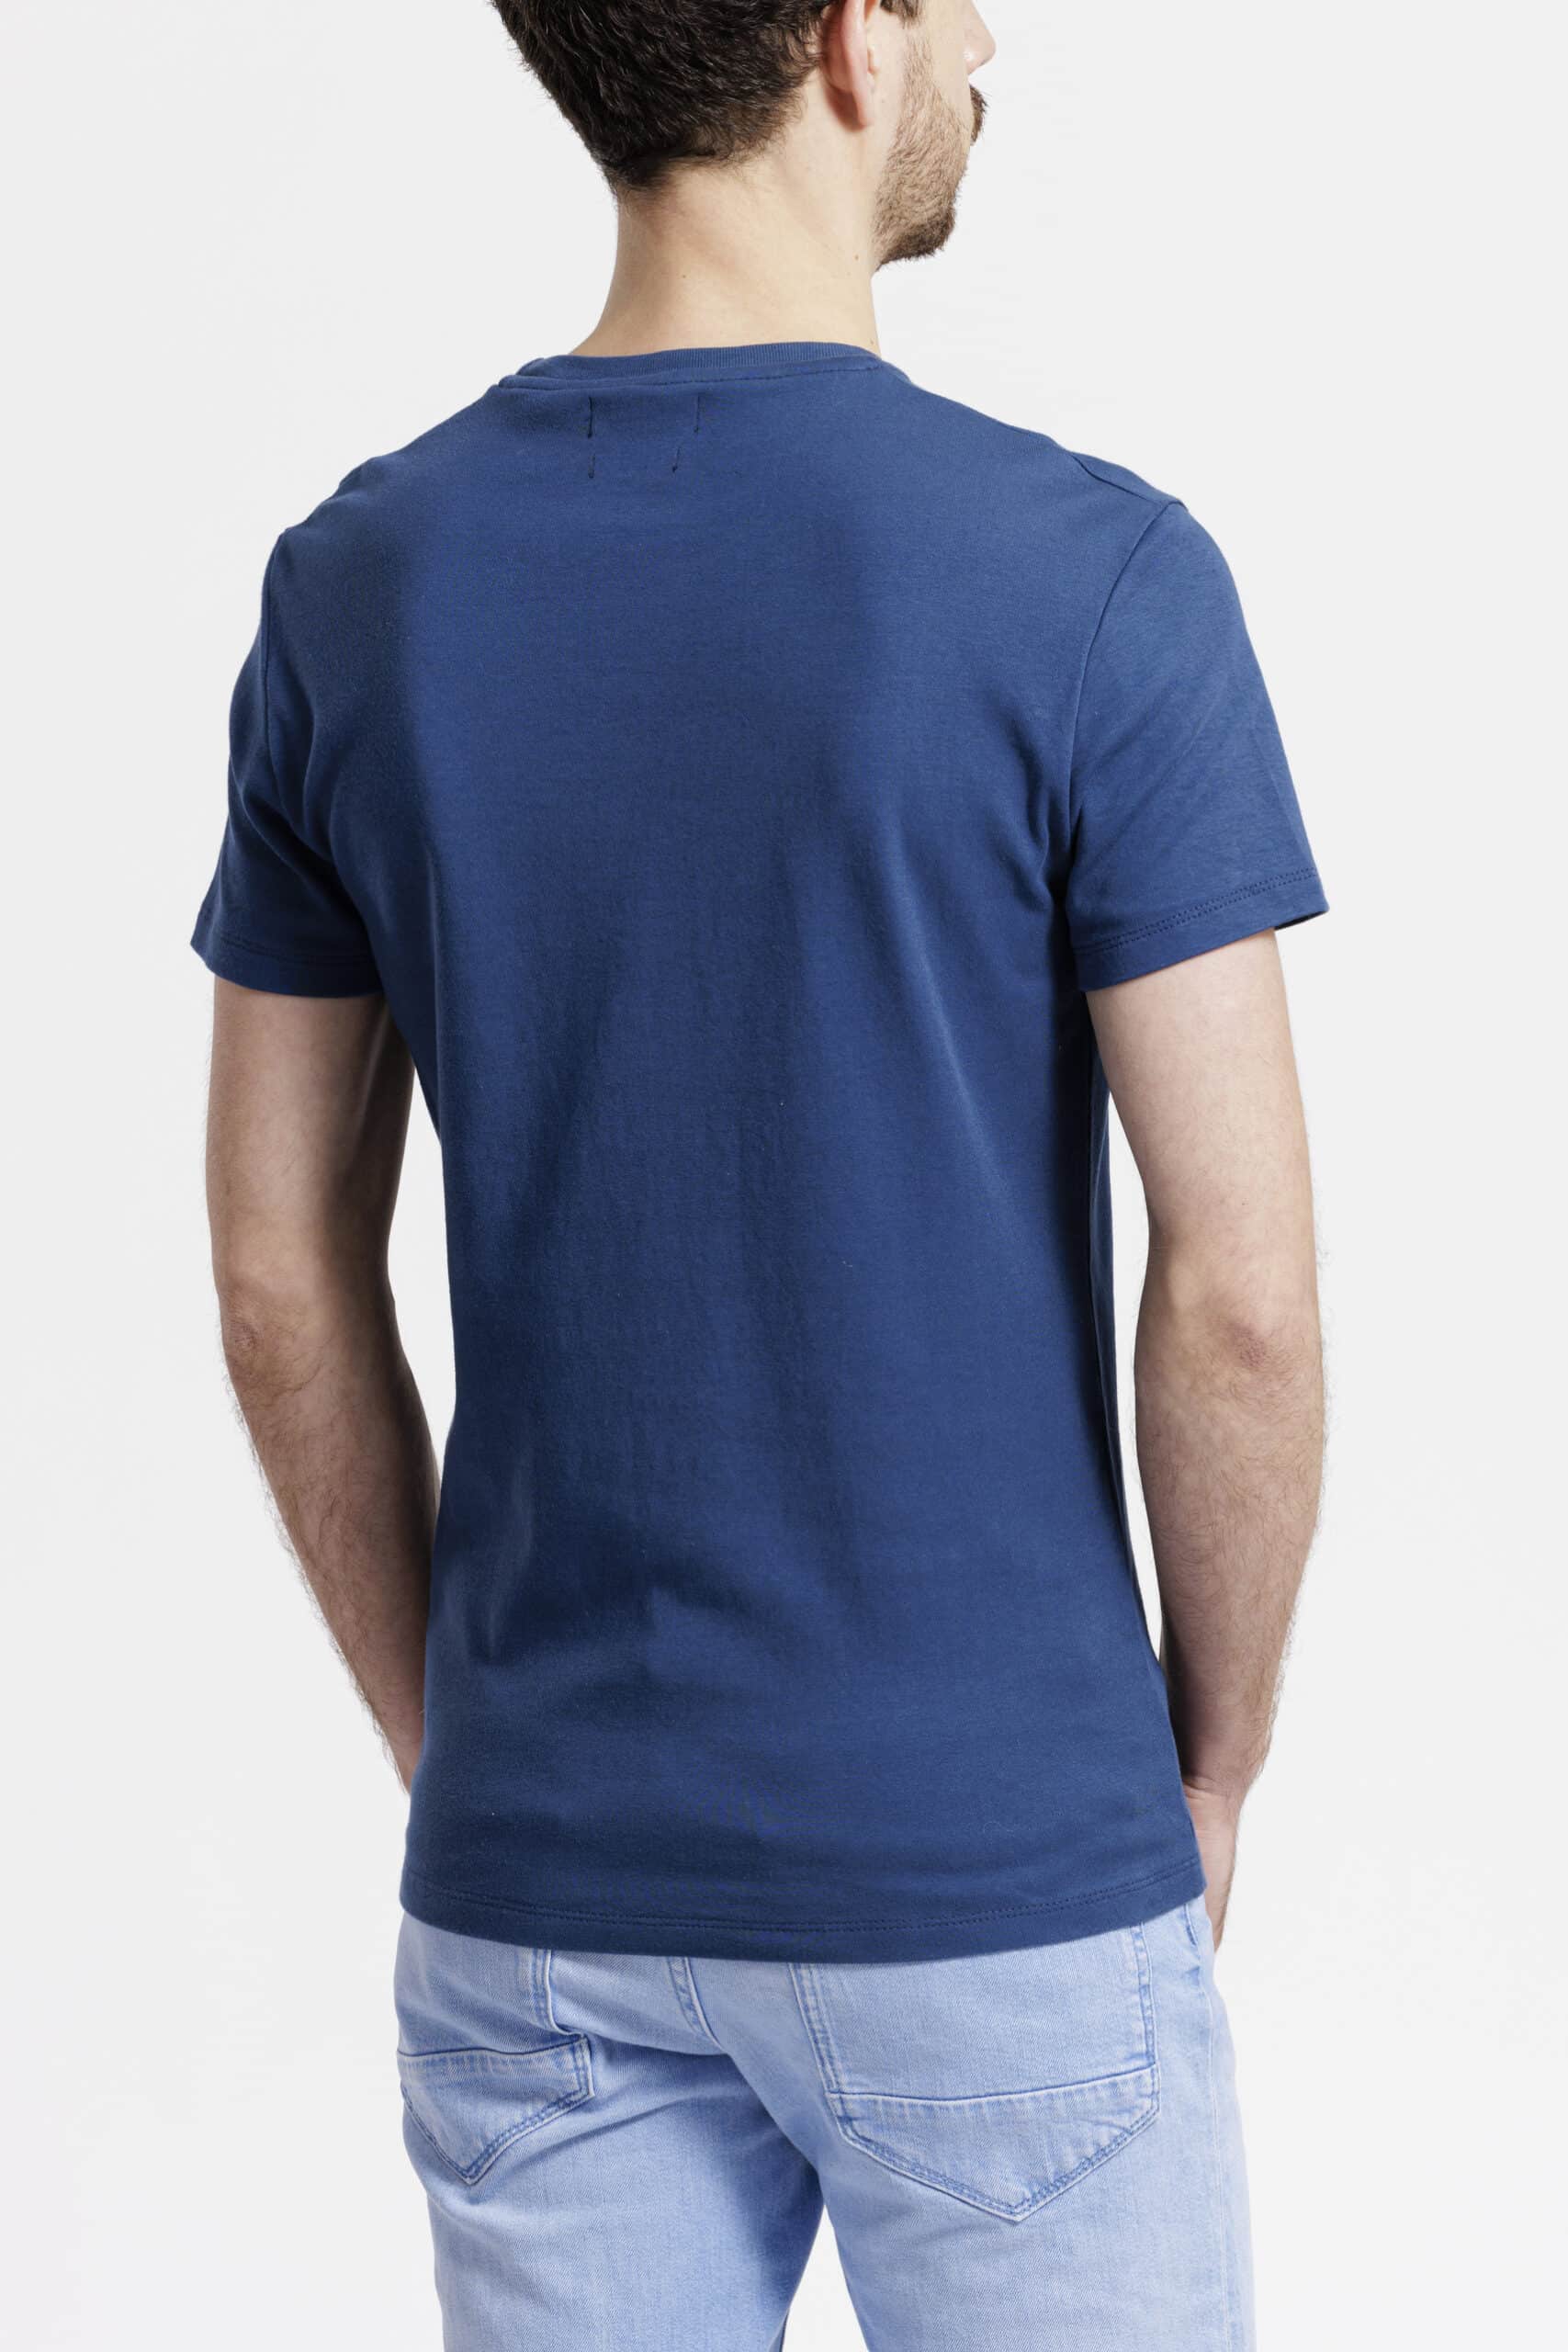 T-shirt homme dos bleu de cobalt